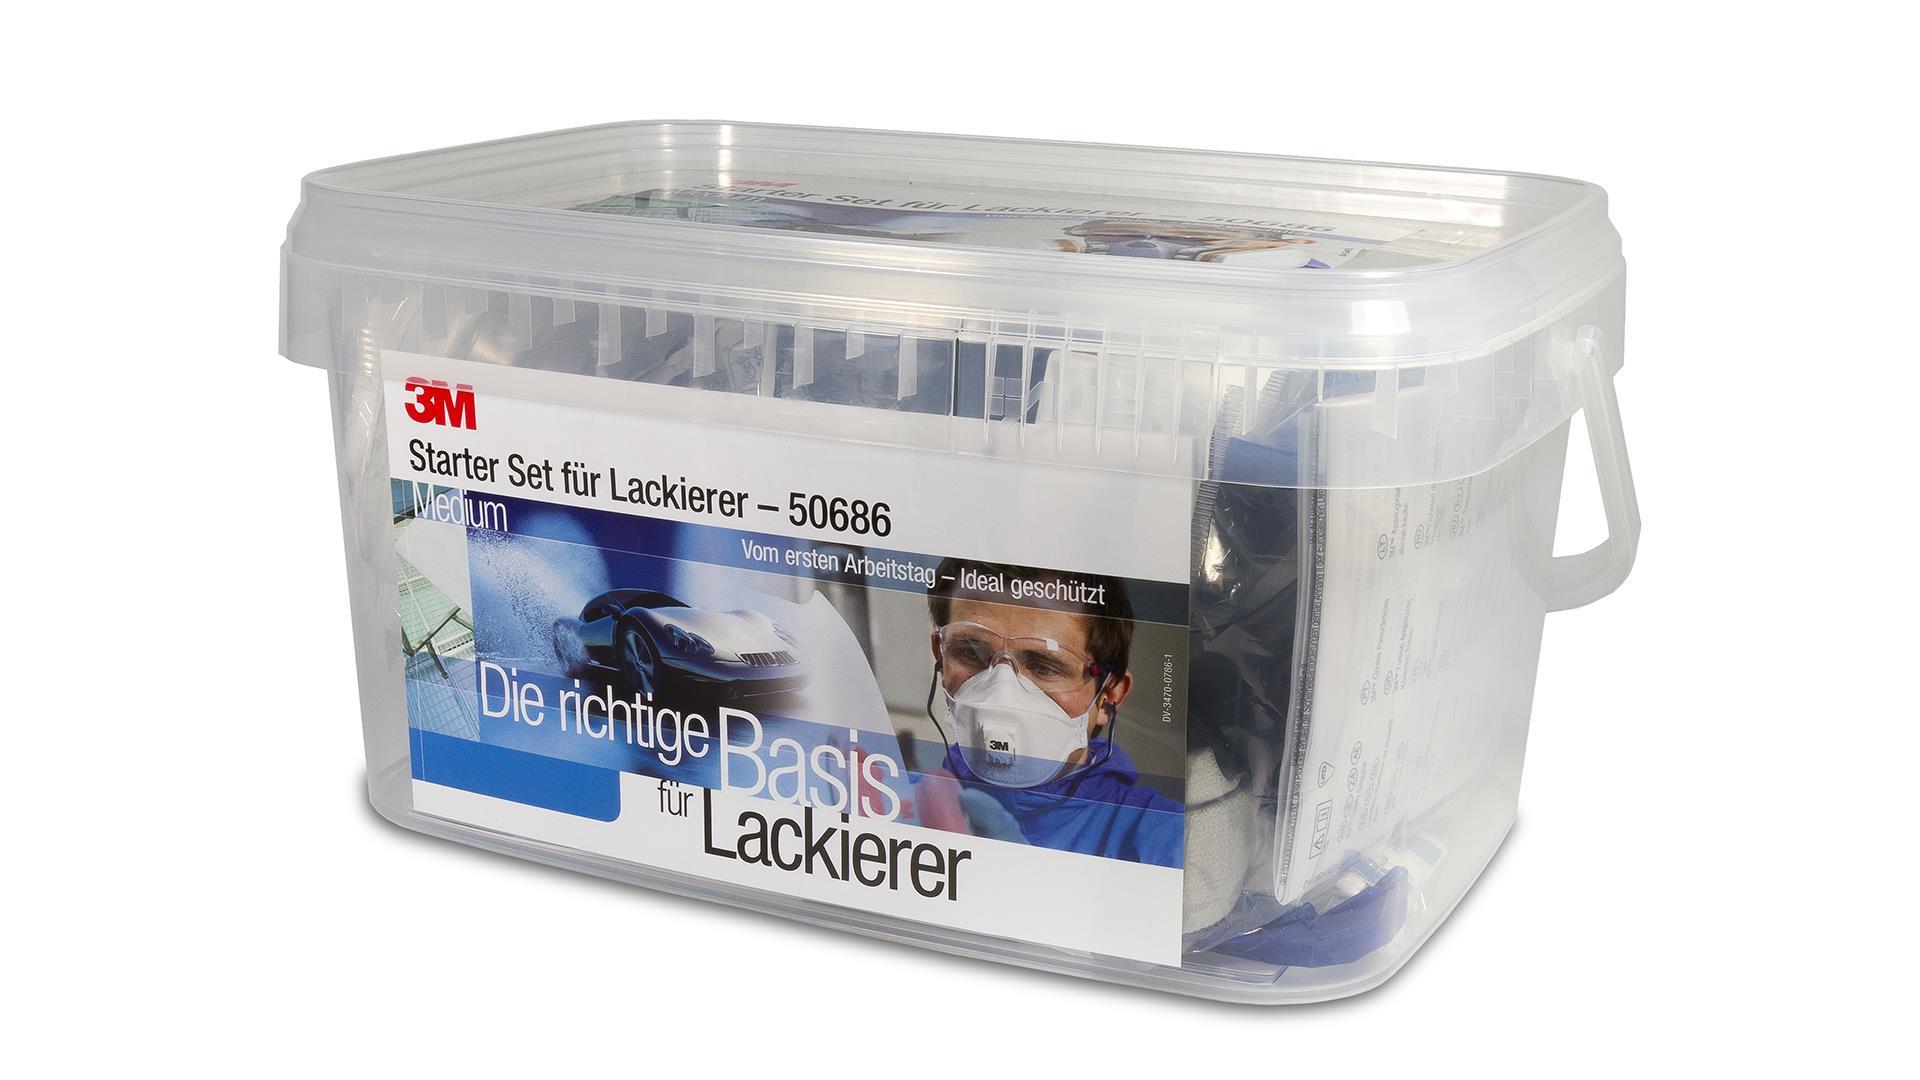 3M Mehrweg-Atemschutzmaske L für Lackierarbeiten Starter-Paket, A2P3 R Filter, große Maske 50687 (1 Set)